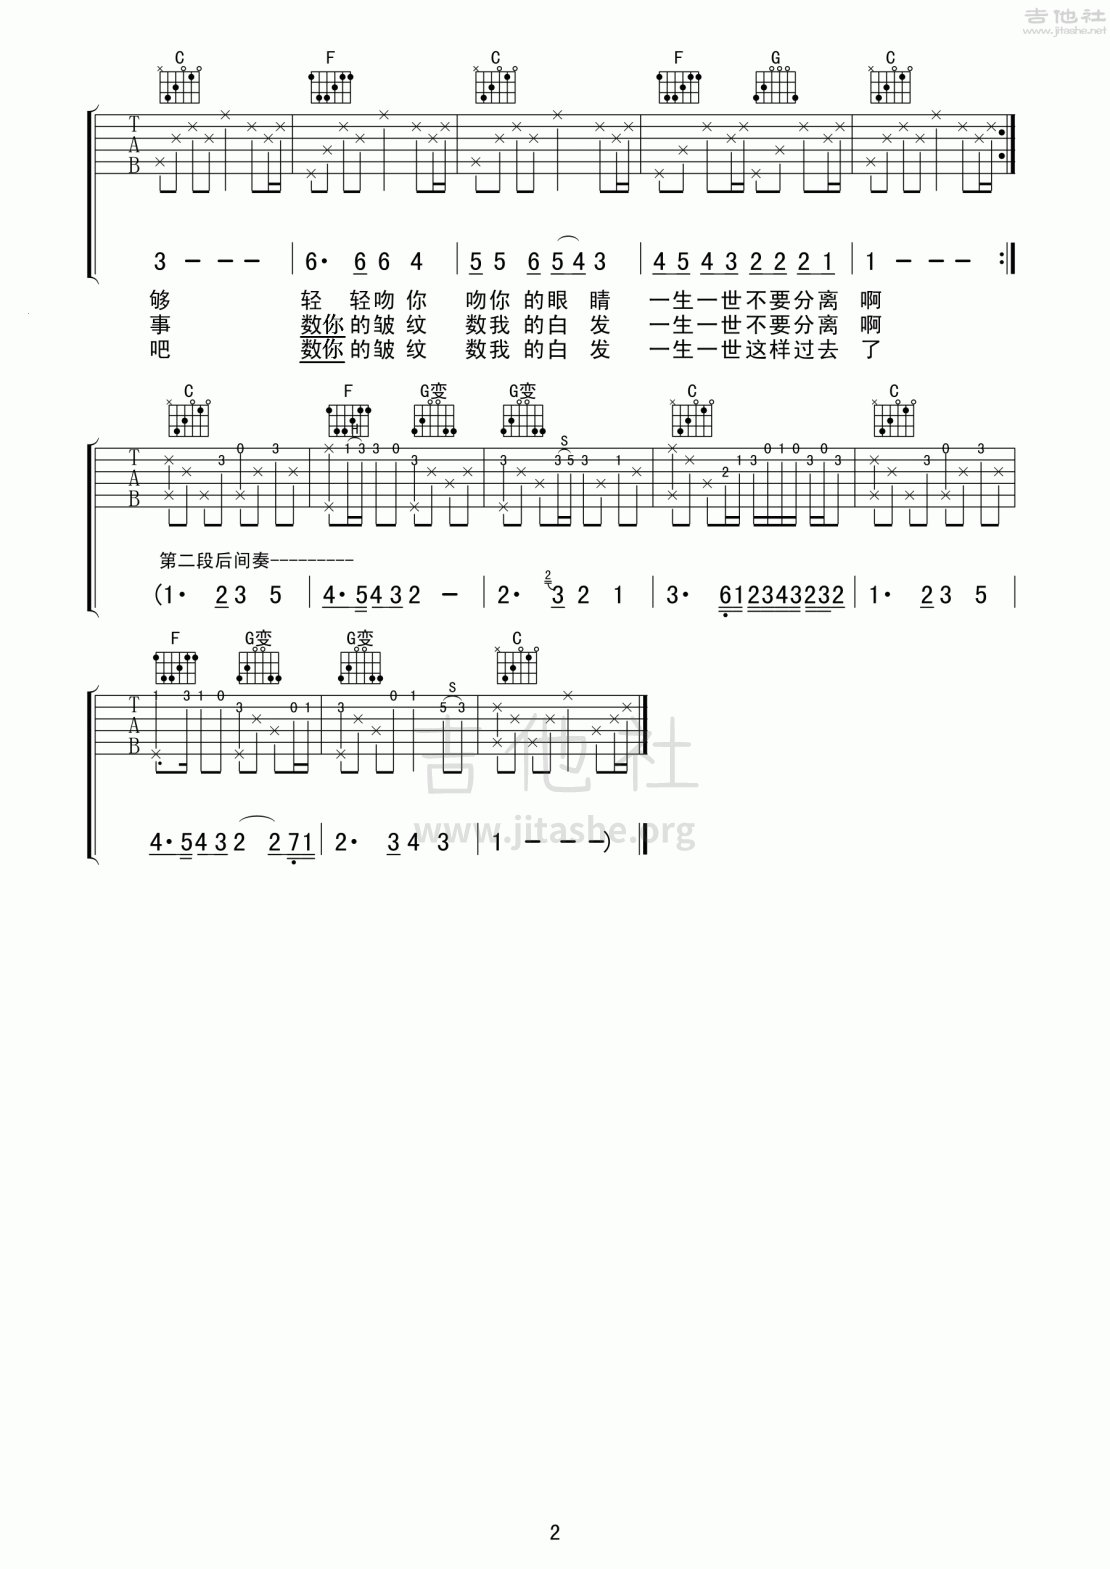 丽江之歌(如果我老了 把爱做够)吉他谱(图片谱,弹唱,民谣)_群星(Various Artists)_丽江之歌2.gif